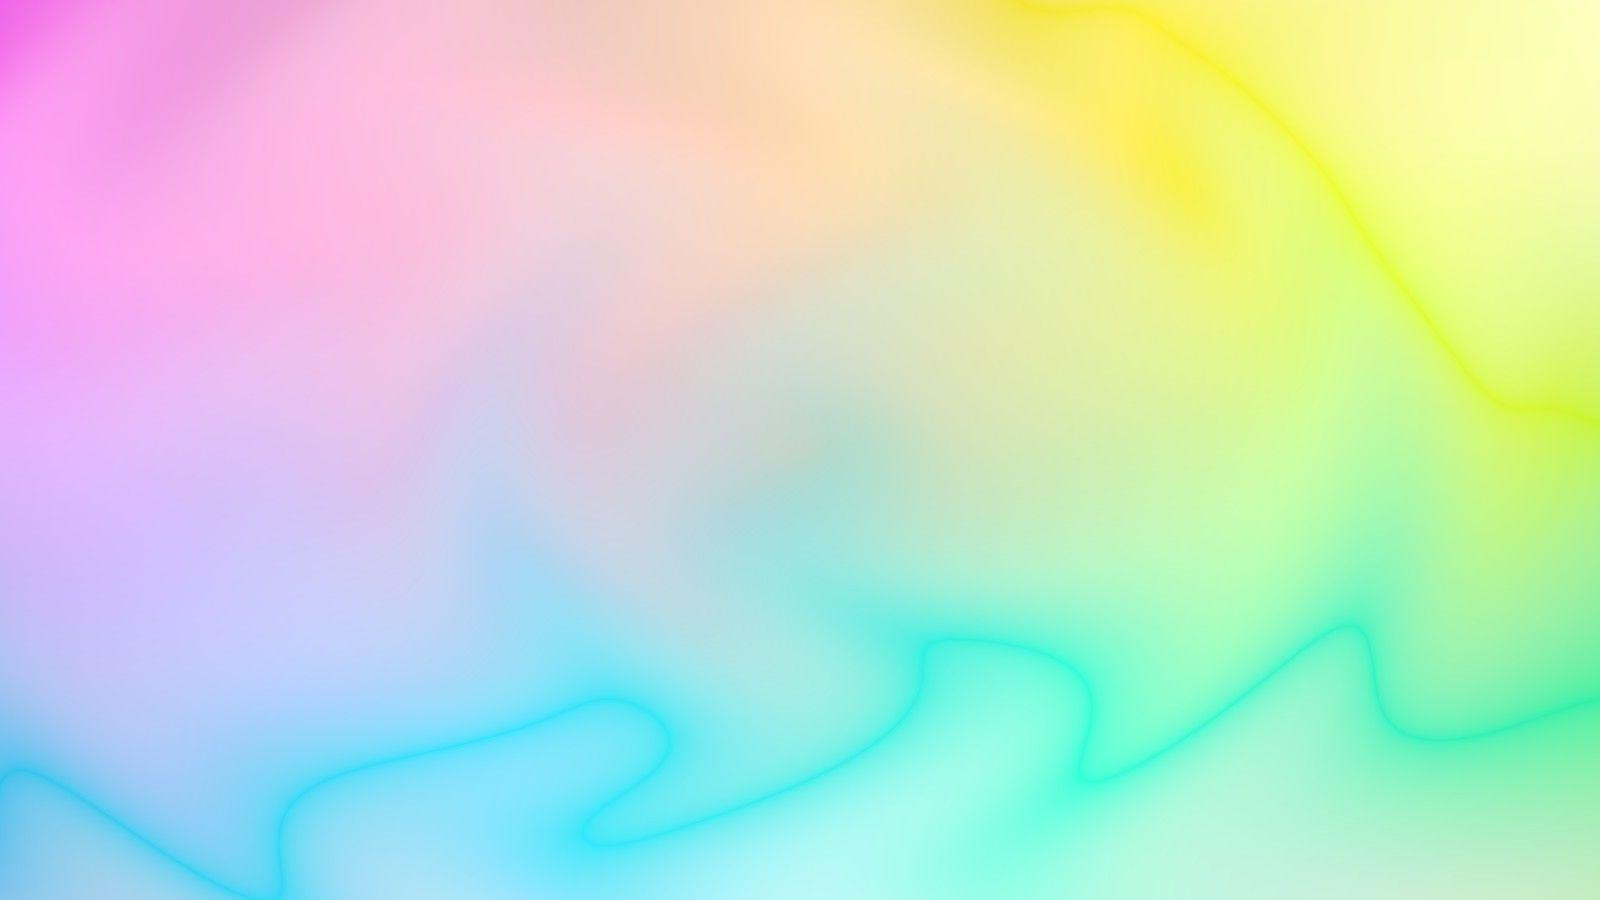 1600x900 Kết quả hình ảnh cho nền gradient ombre tumblr.  Ombre